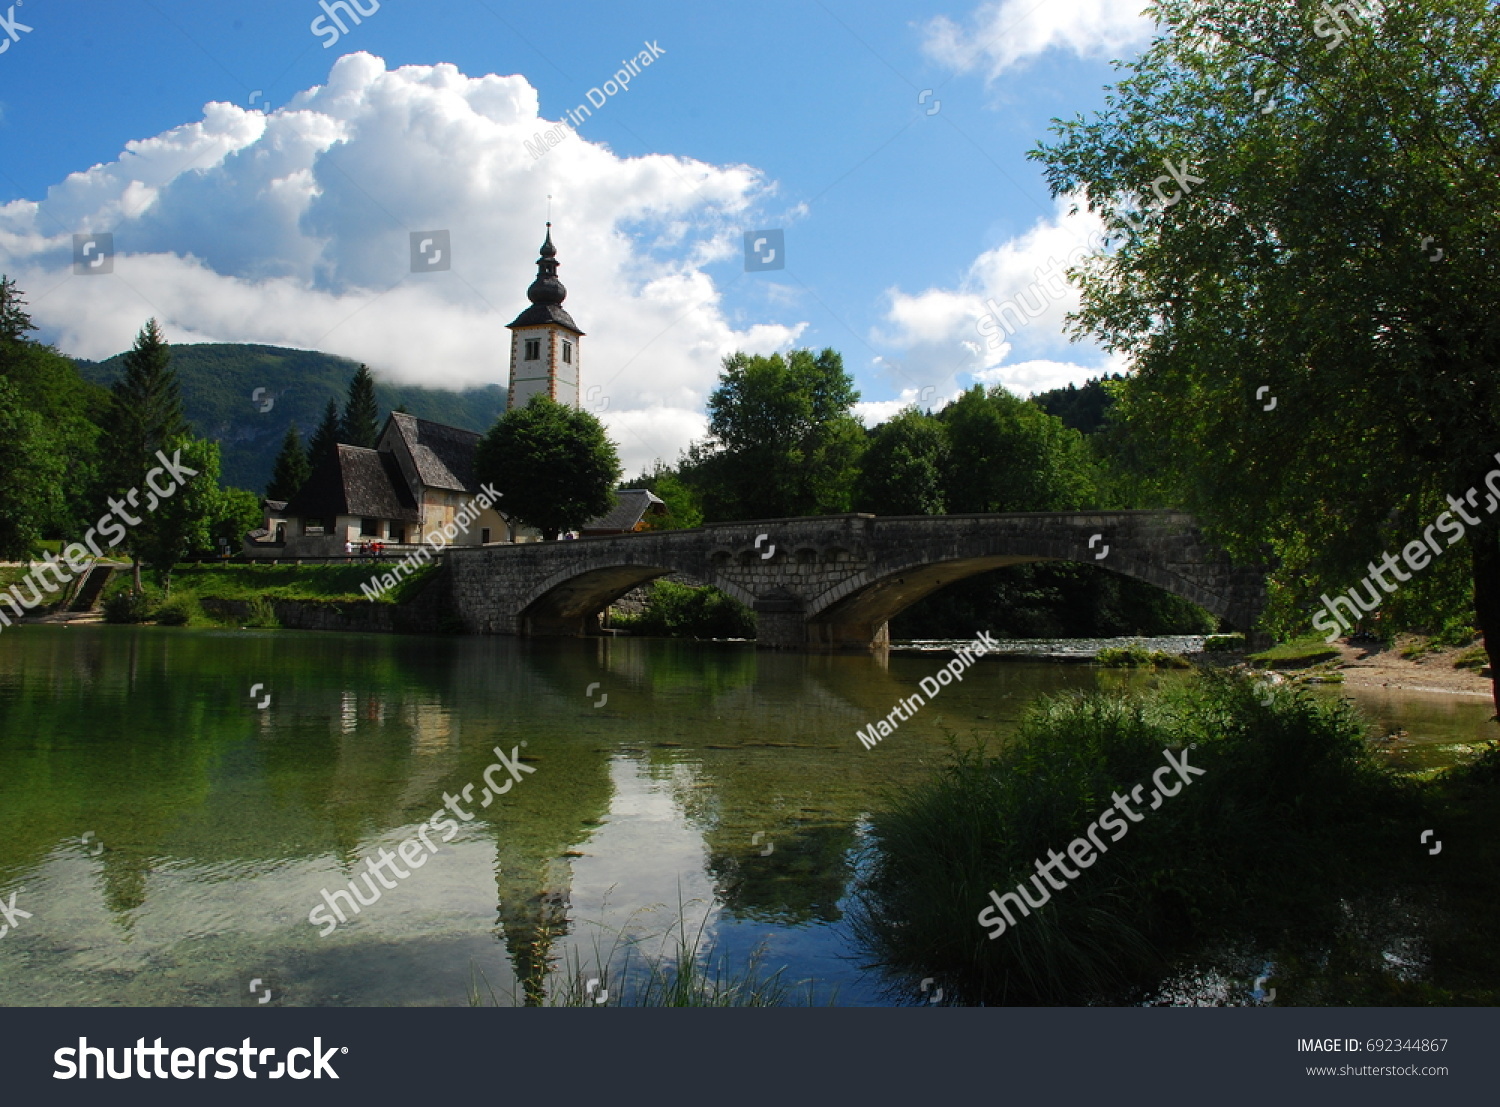 Church, Bohinj lake, Slovenia #692344867